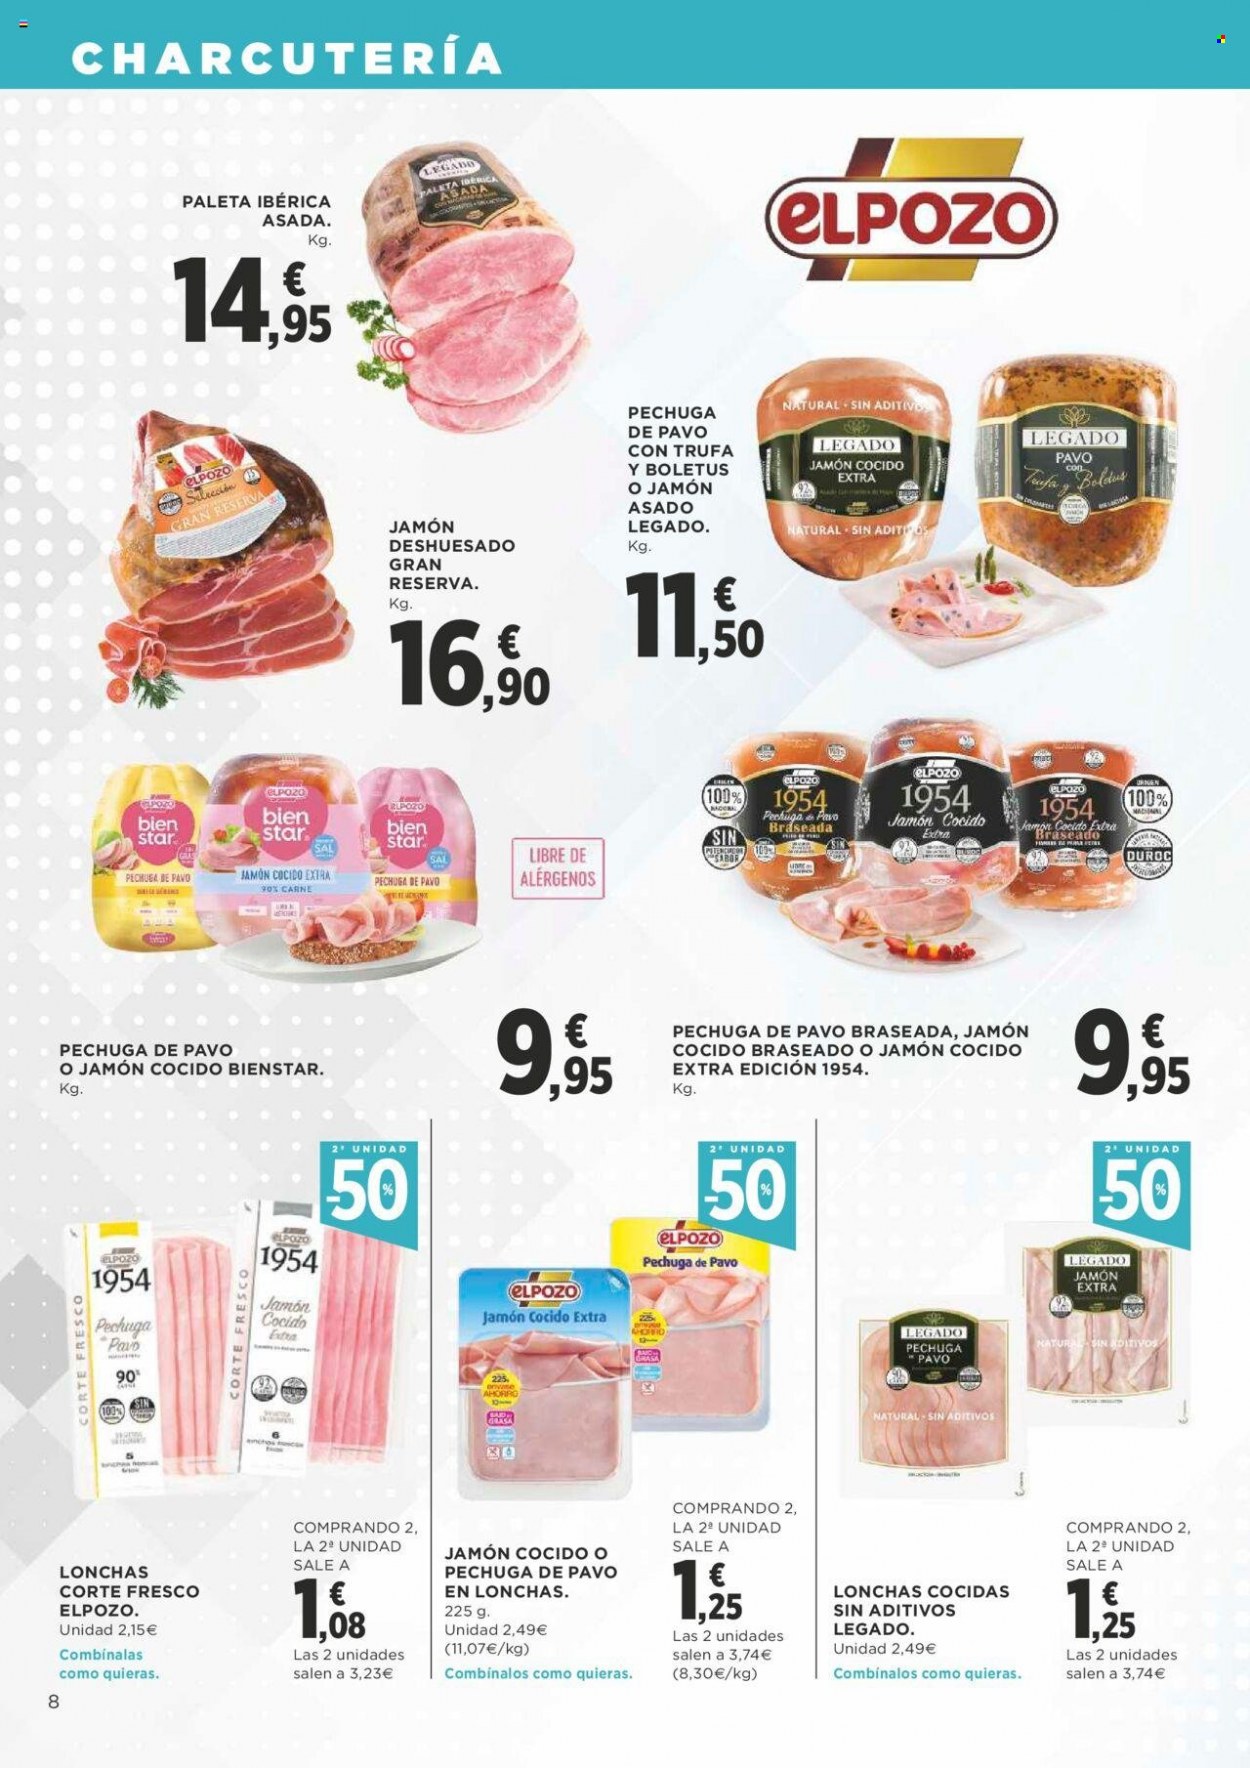 thumbnail - Folleto actual Supercor supermercados - 16/06/22 - 29/06/22 - Ventas - pechuga de pavo, jamón, Gran Reserva, jamón cocido, paleta ibérica, sal. Página 8.